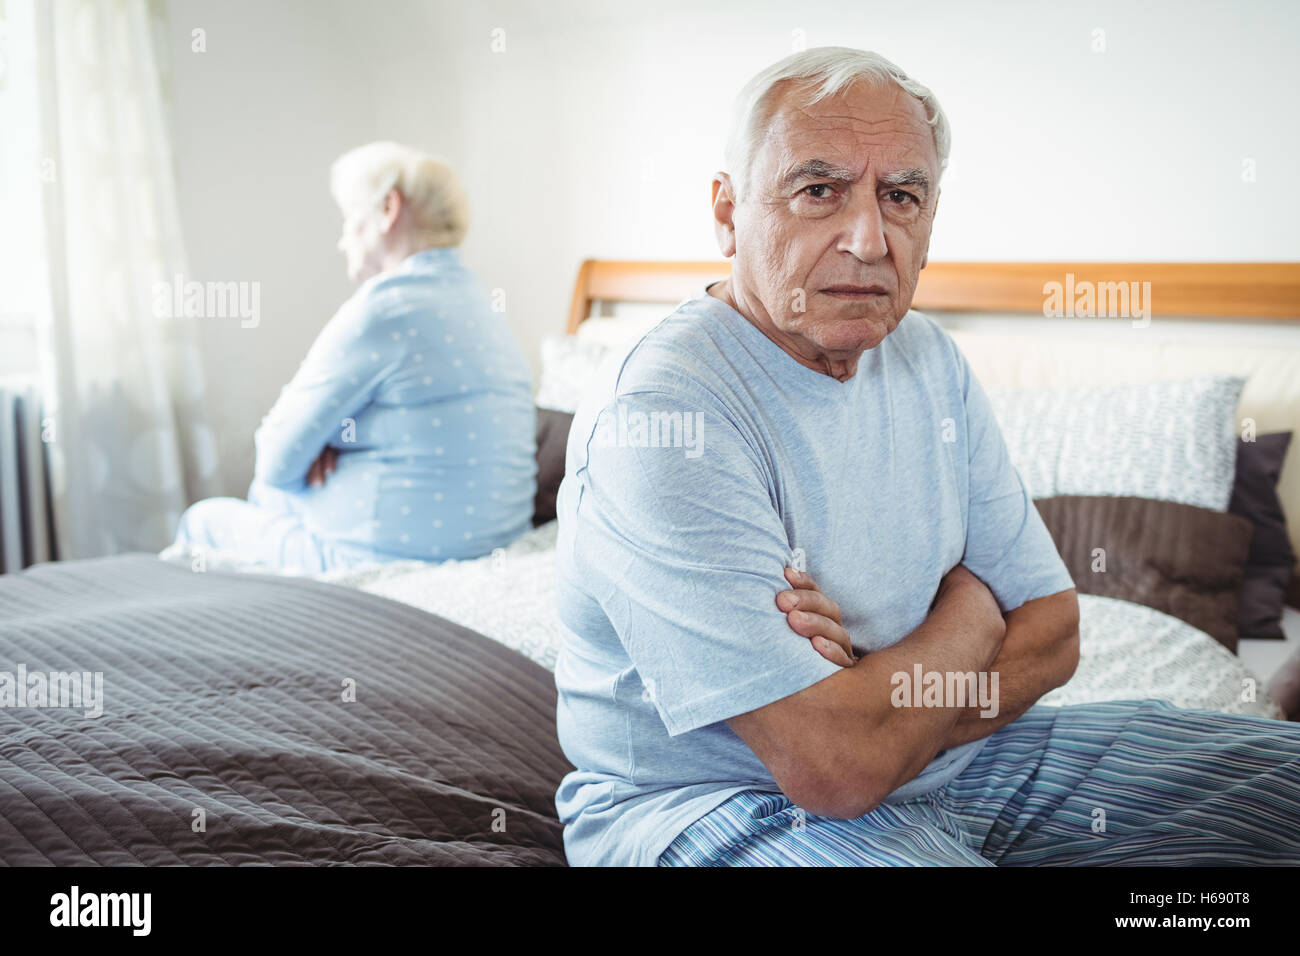 Sad senior couple sitting on bed Stock Photo